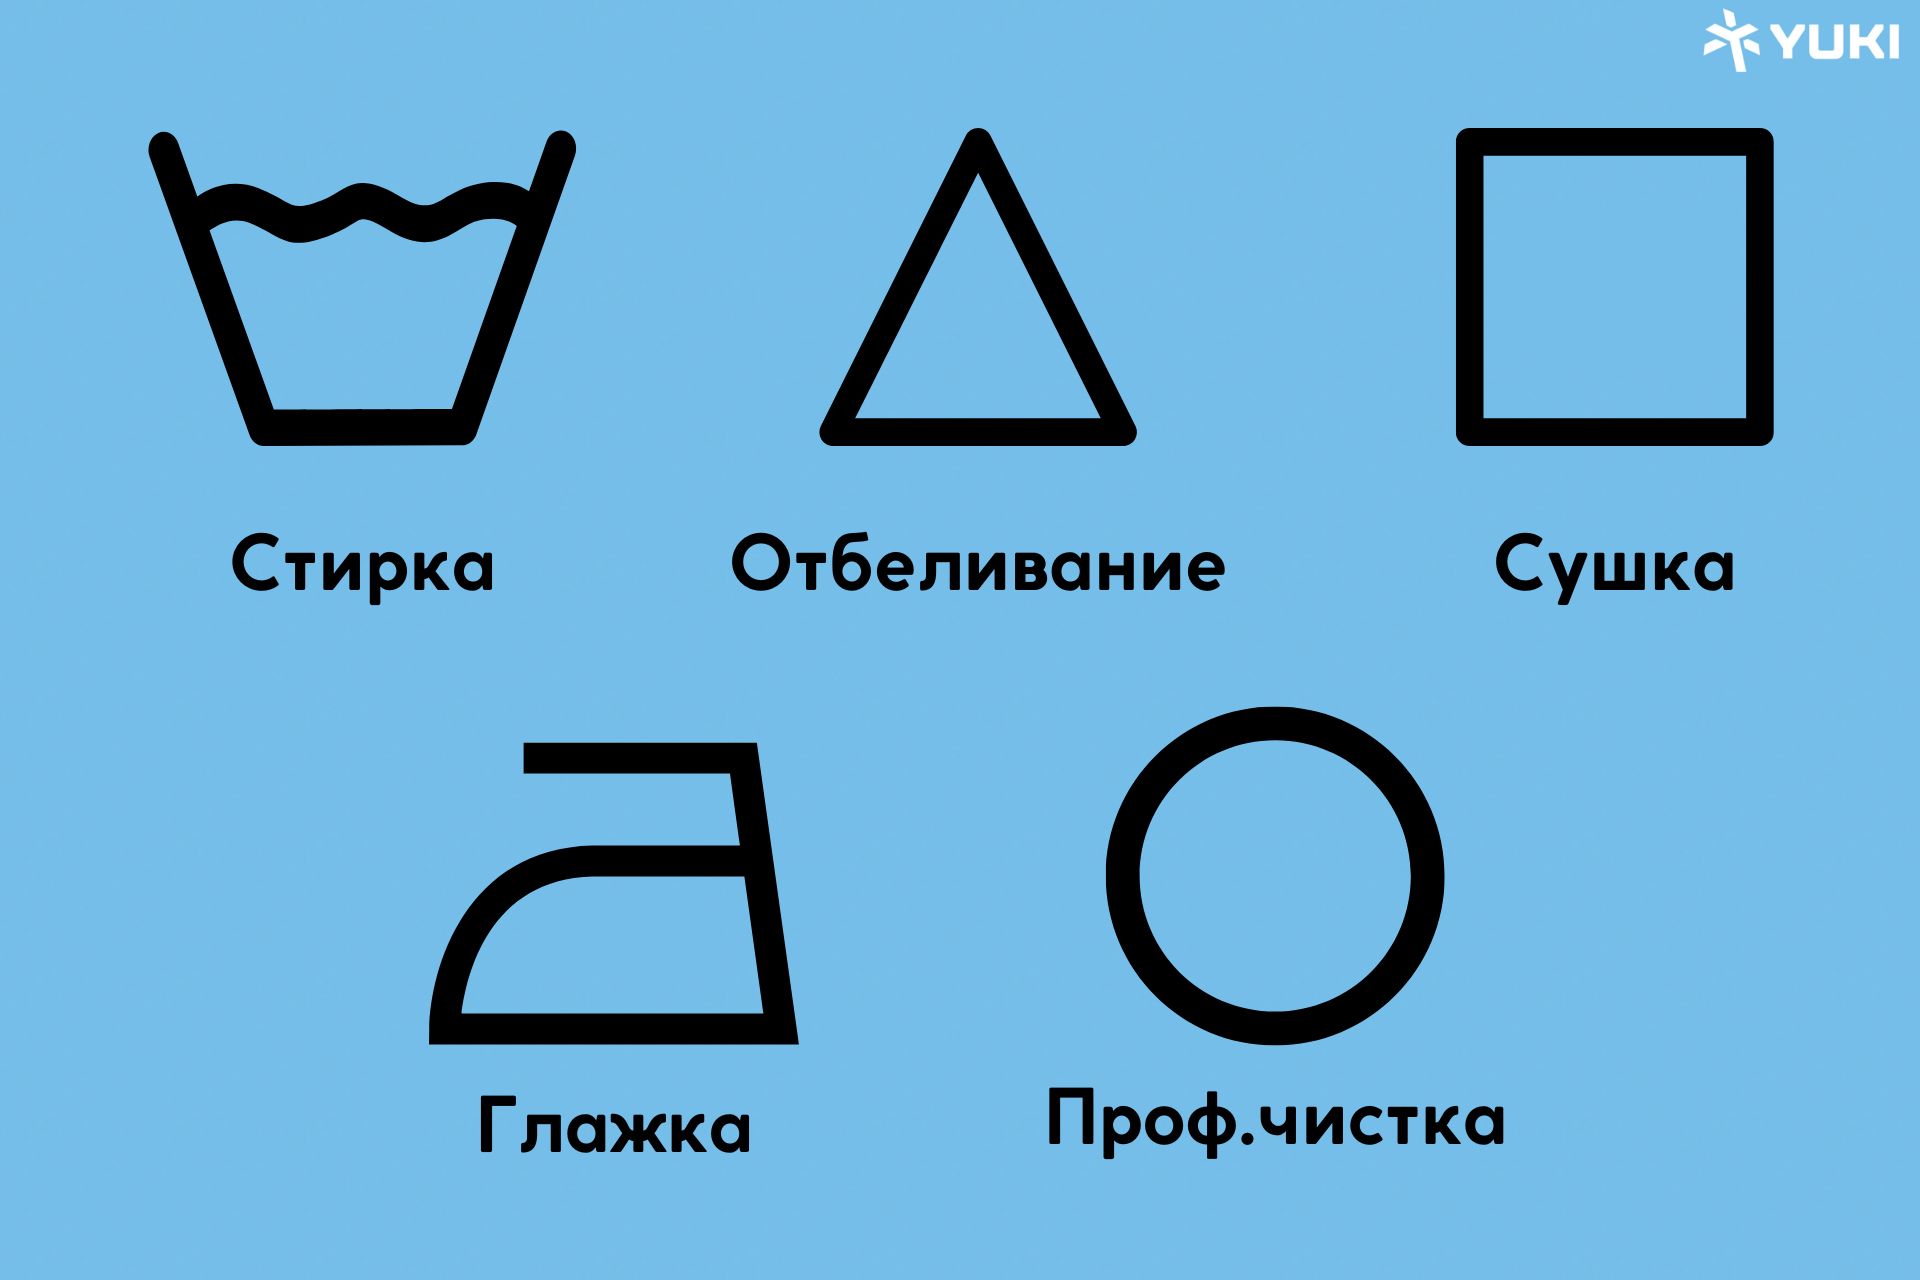 Значки для стирки на одежде - расшифровка обозначений символов